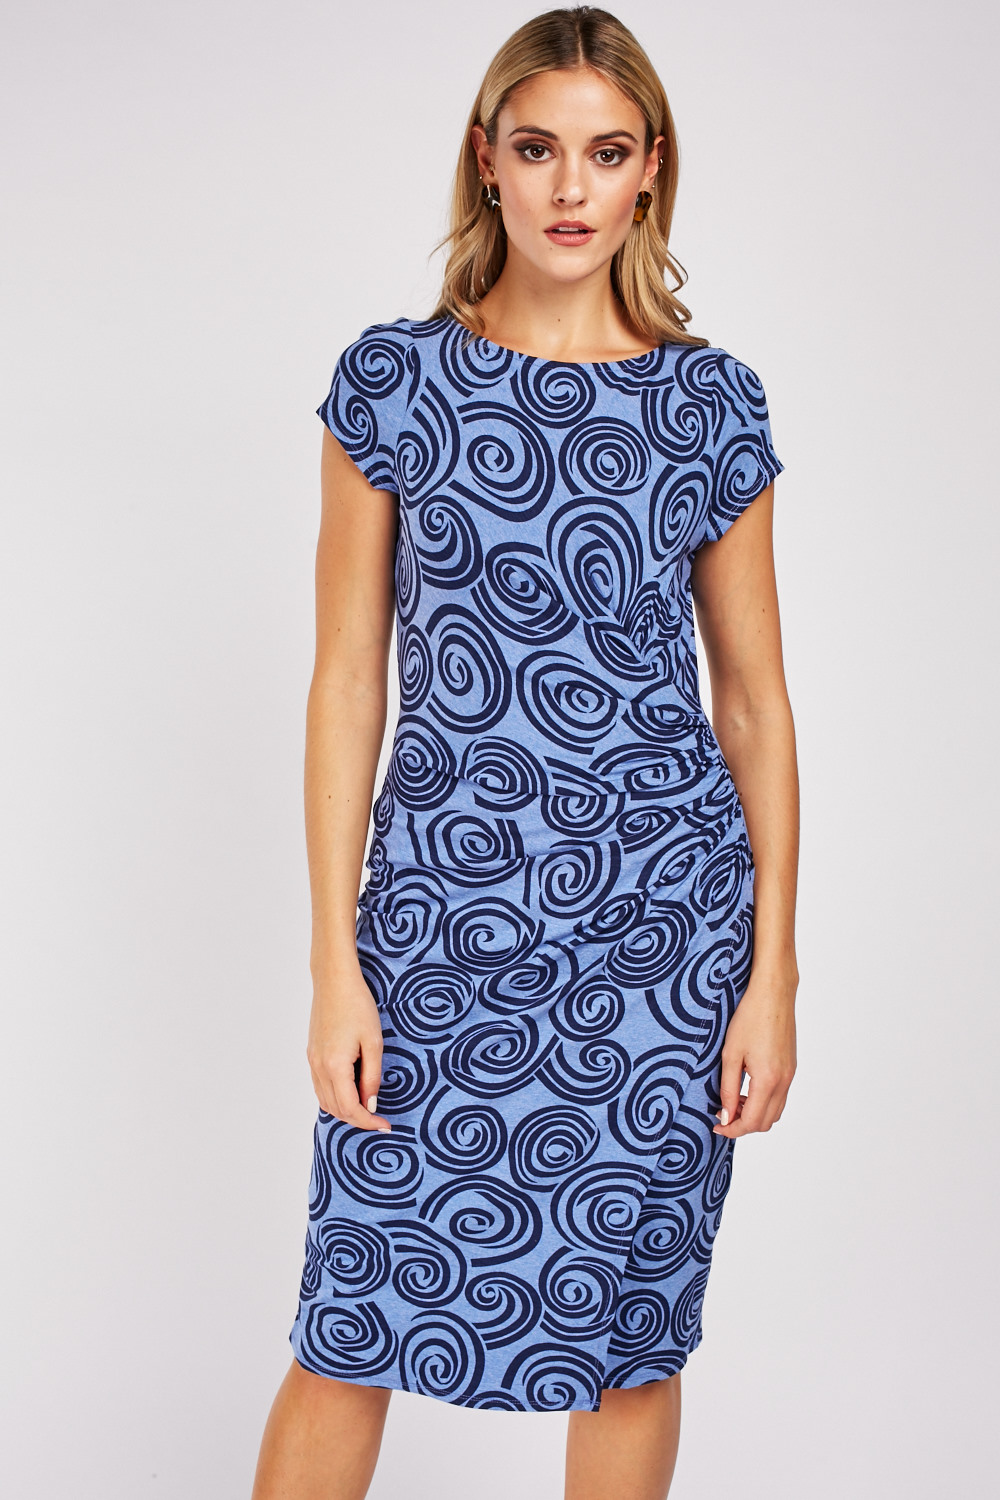 Swirl Pattern Ruched Midi Dress - Just $7